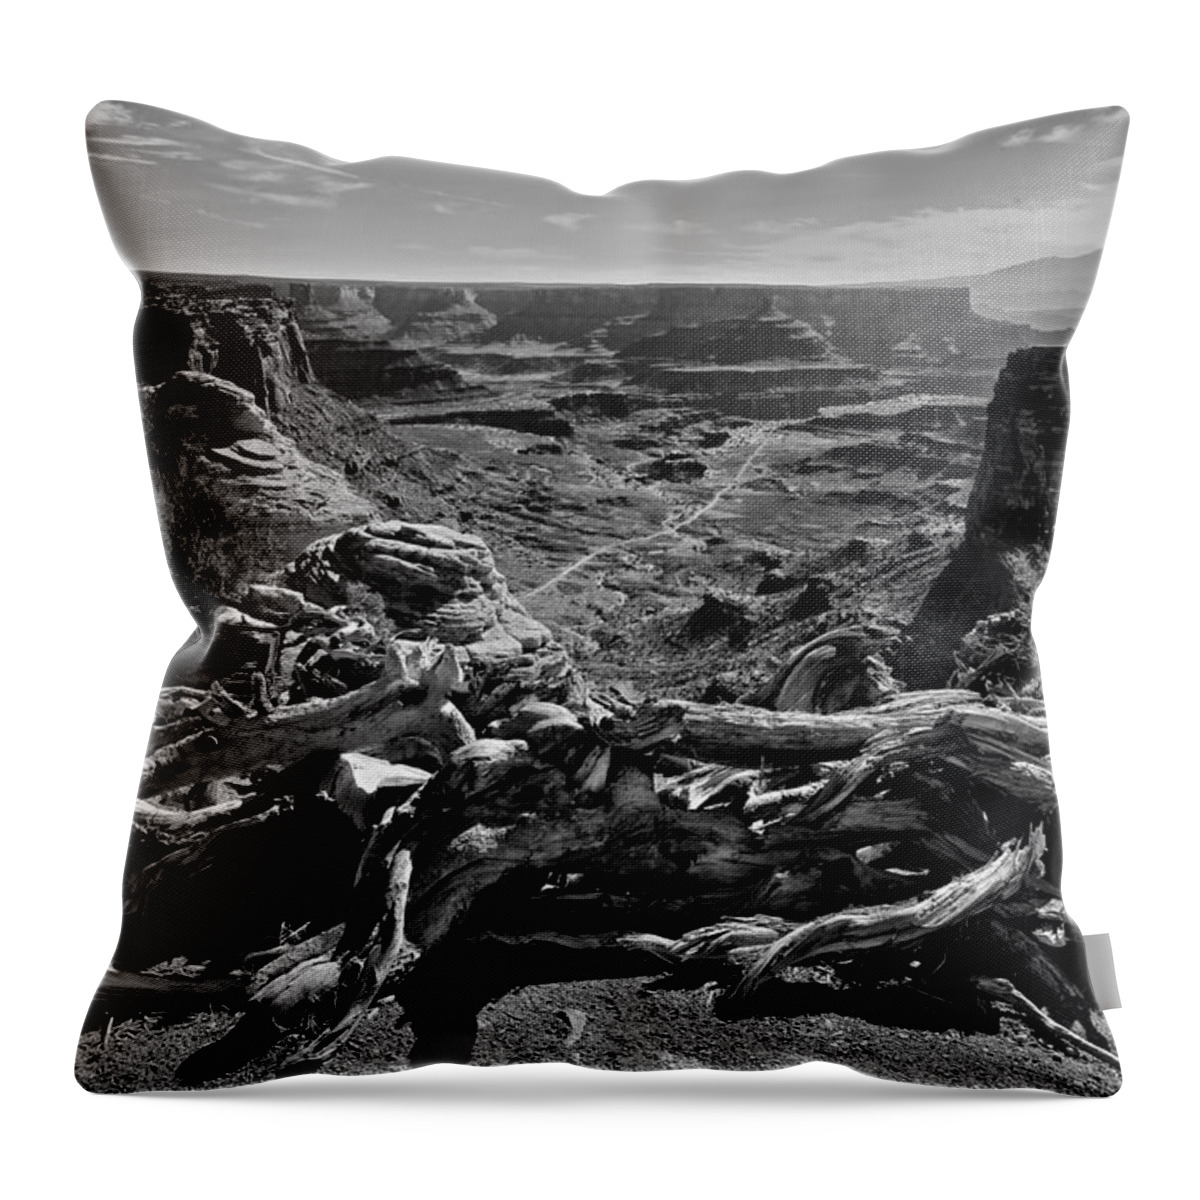 Canyonlands National Park Throw Pillow featuring the photograph Canyonlands National Park by John Daly